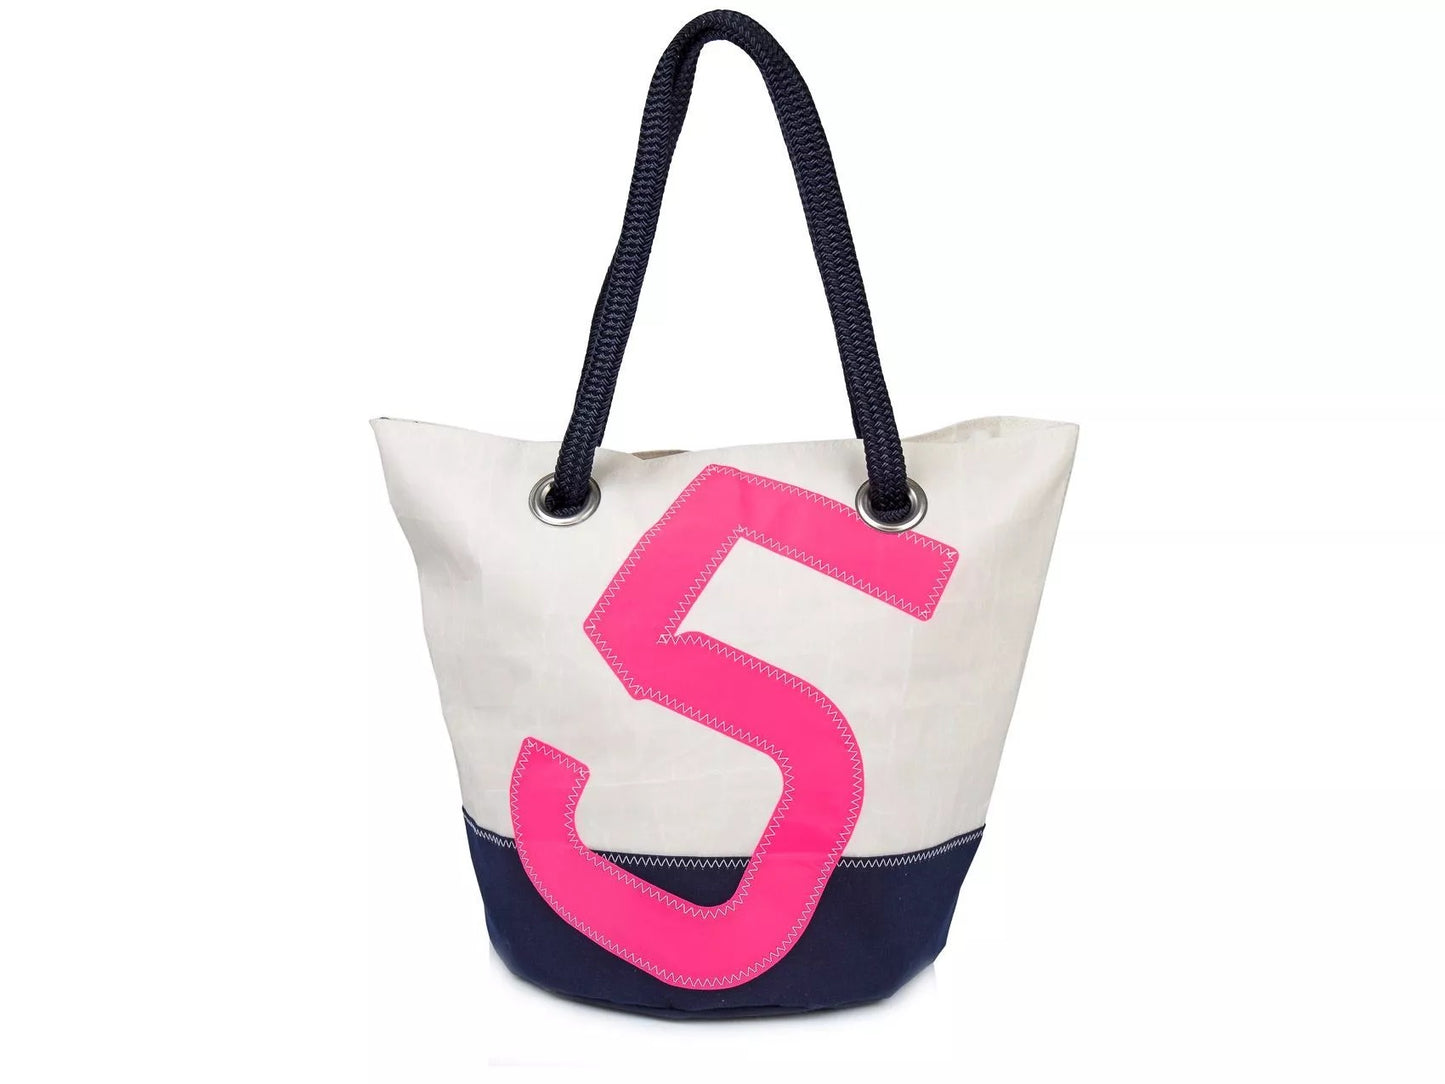 727 Sailbags Handtasche Sandy N°5 Summer Time * 100 % recycelte Segel * Null Abfall Ziel * weiß beige * handgemacht